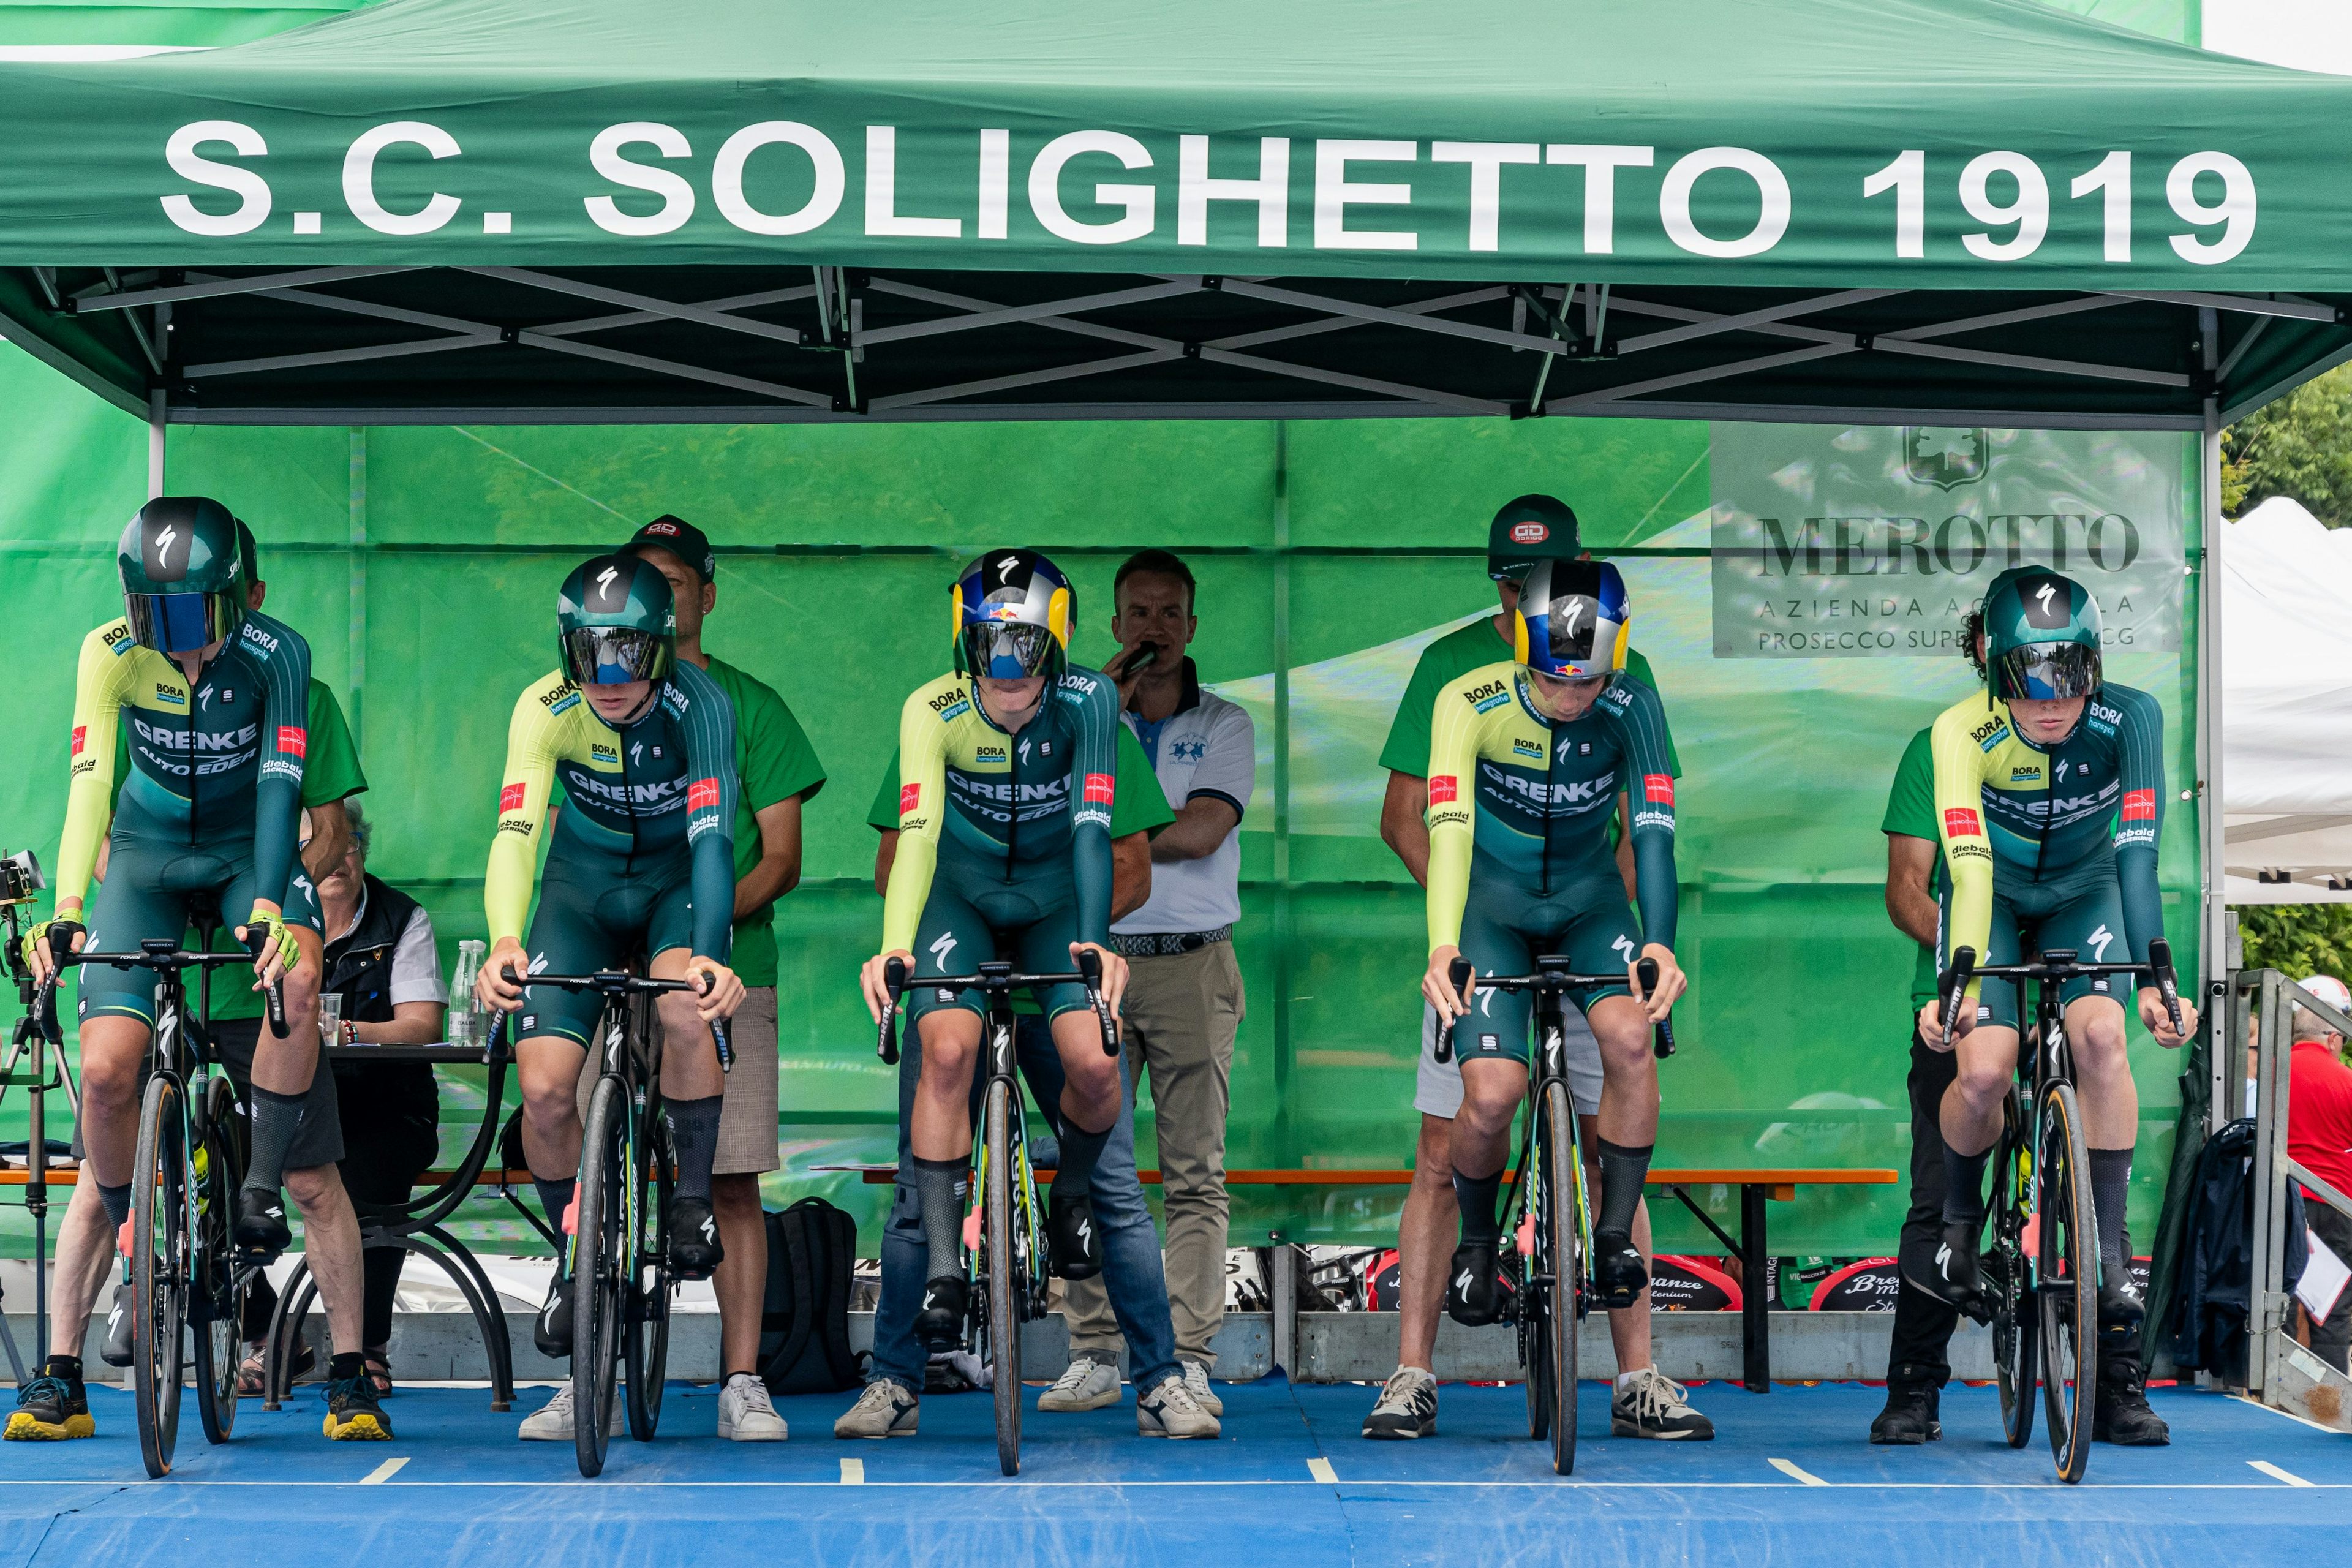 GRENKE - Auto Eder wins the team time trial at the Gran Premio Eccellenze Valli del Soligo (Photo: Cyclingshoots - Stefano Colombo)